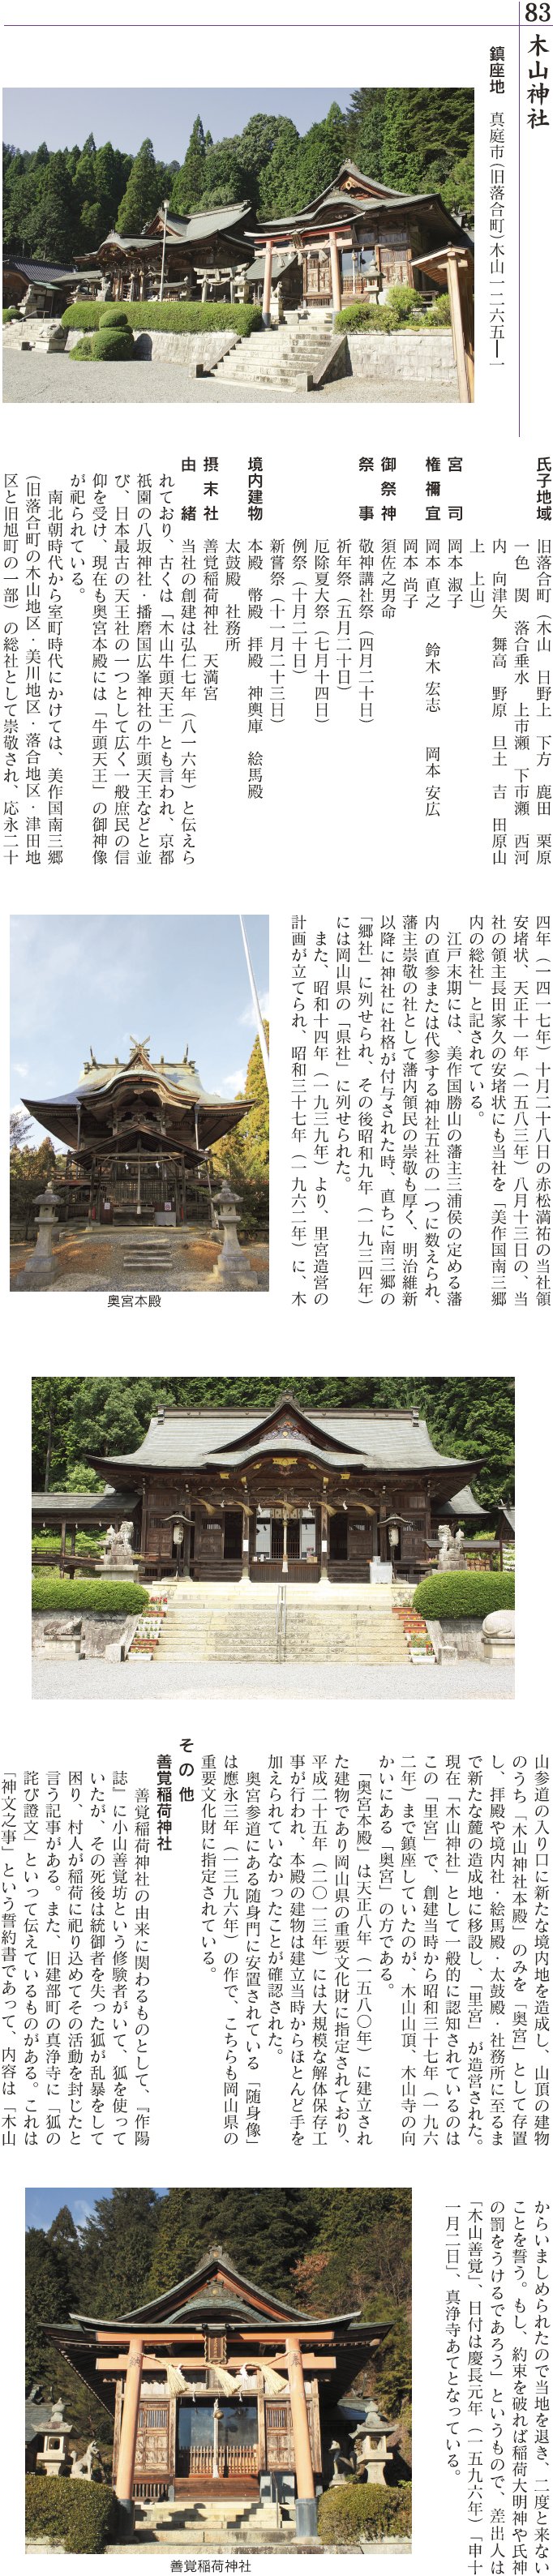 83 木山神社